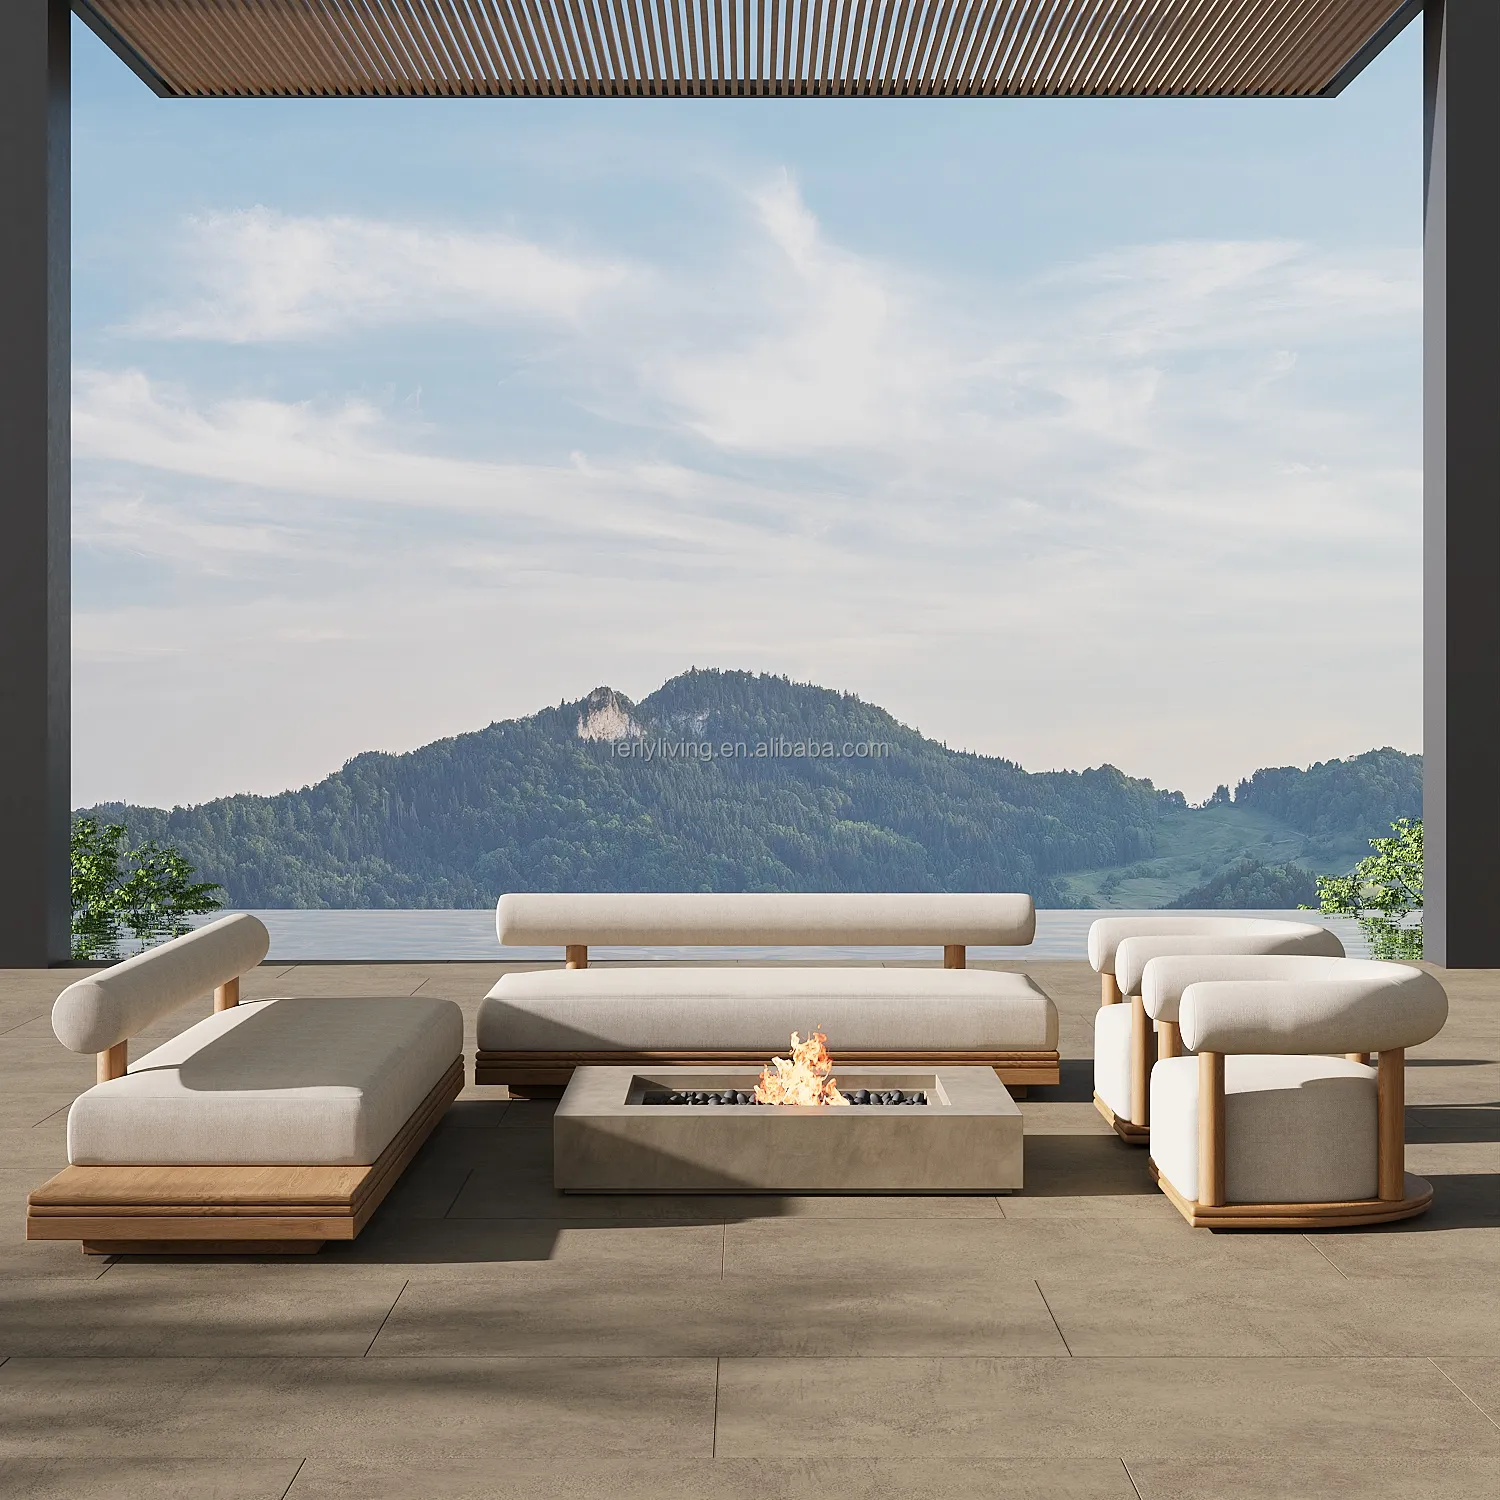 FERLY Individuelle moderne Teakholz-Außenmöbel Terrasse Luxus-Design Sofa Aussensofa-Set Gartenfurniture